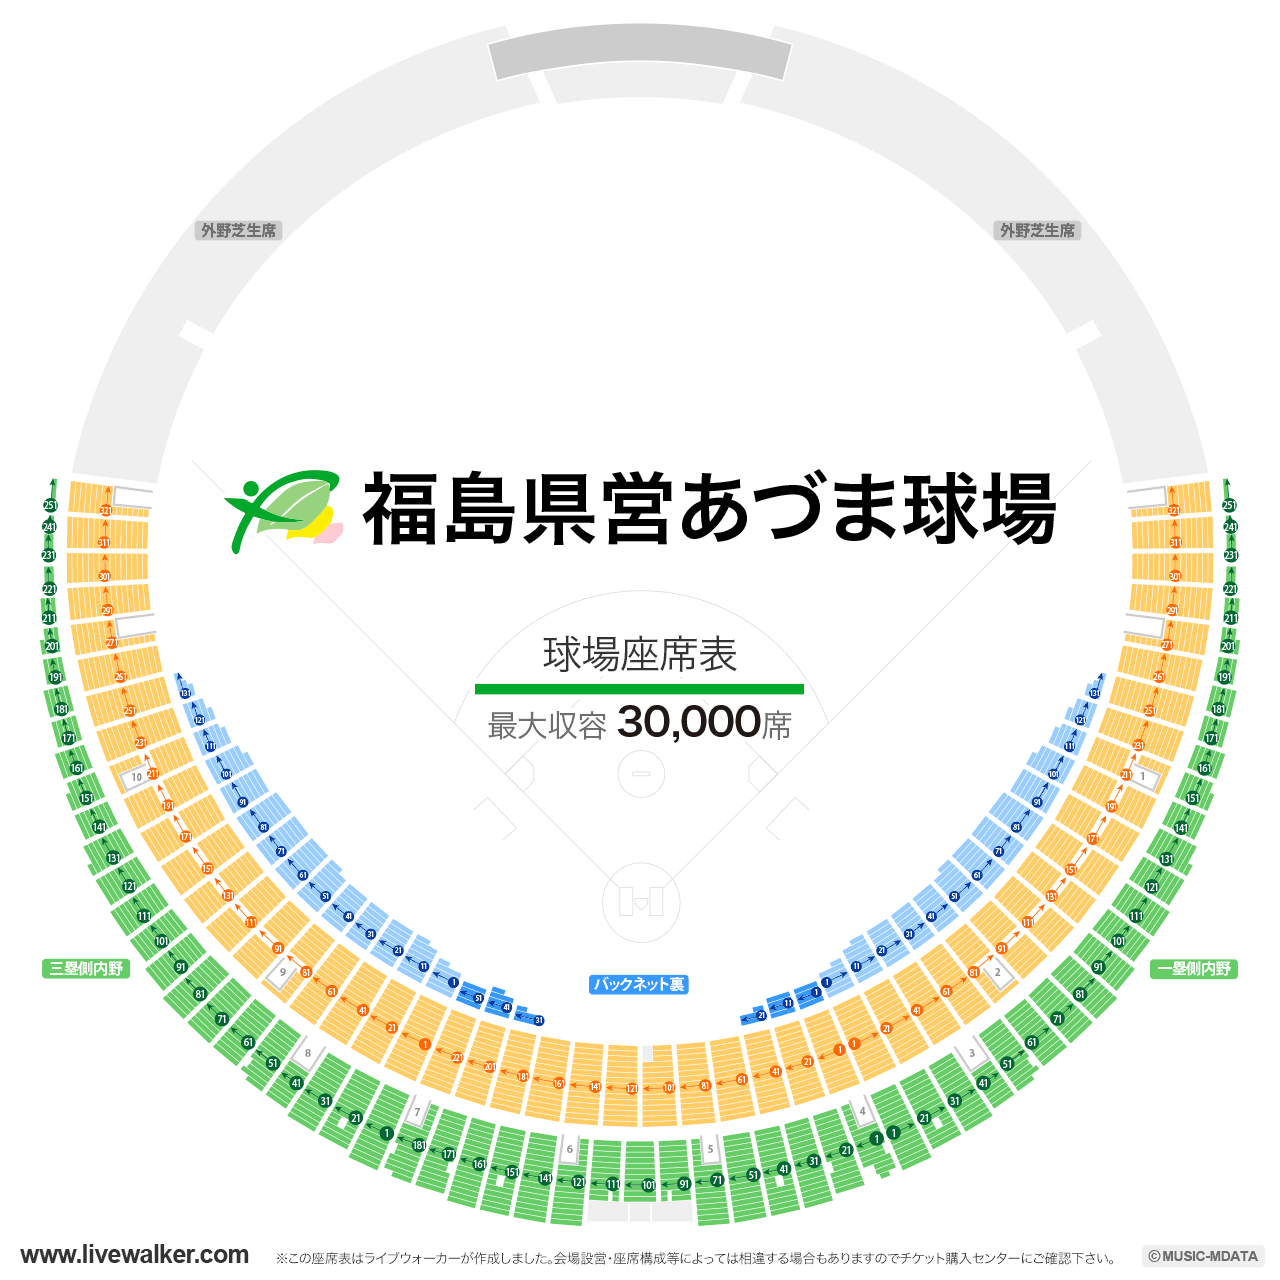 福島県営あづま球場球場の座席表